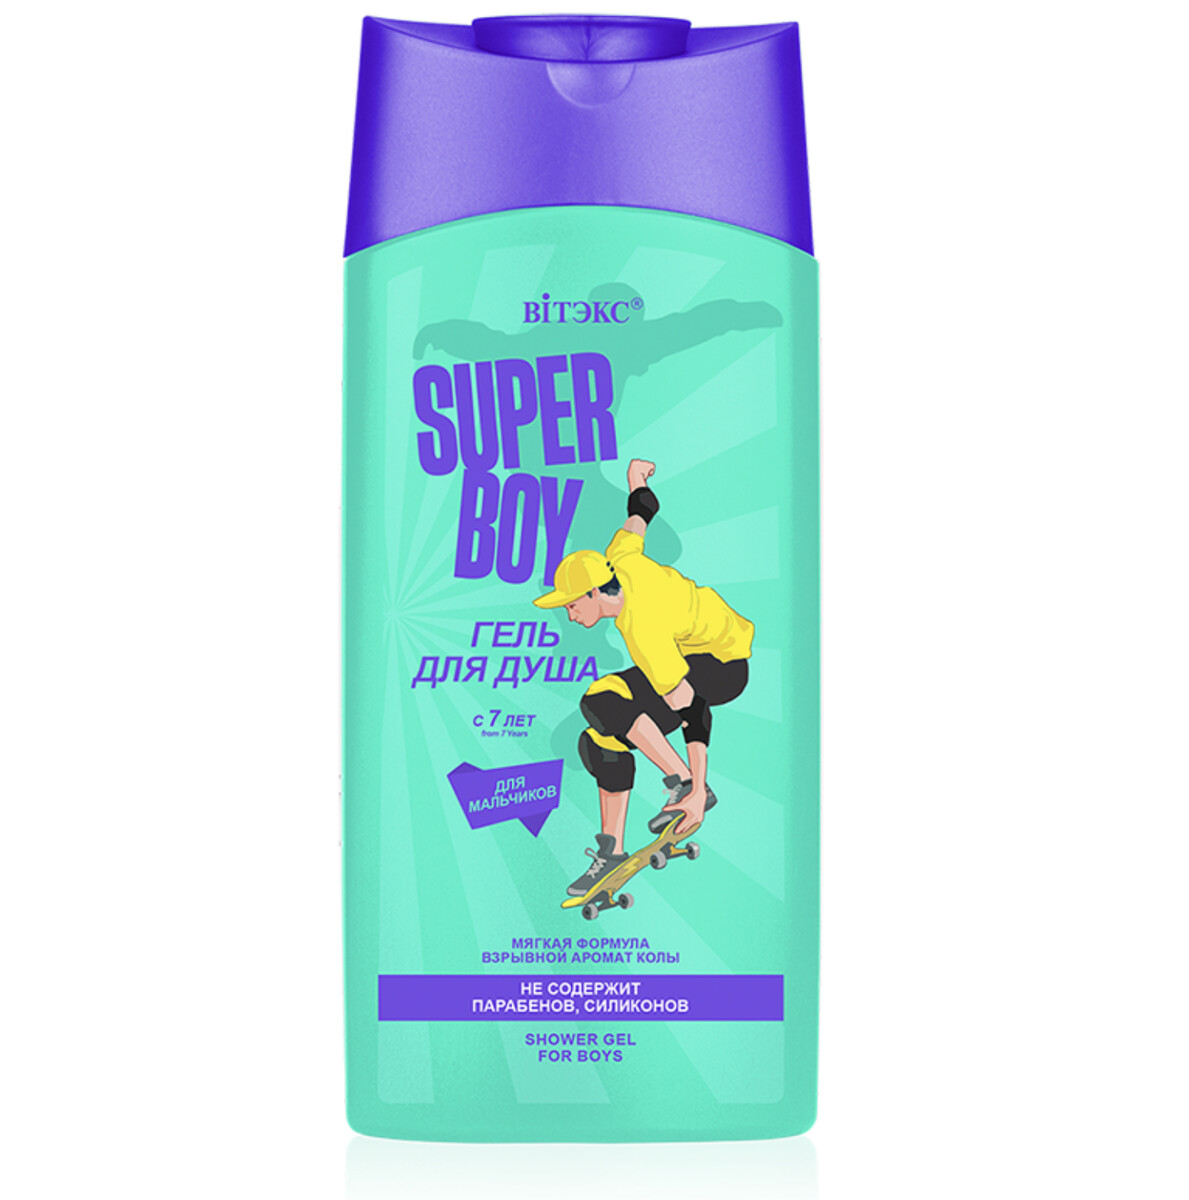 Super boy гель для душа для мальчиков с 7 лет, new 275мл super fruit гель для душа супер банан 450мл